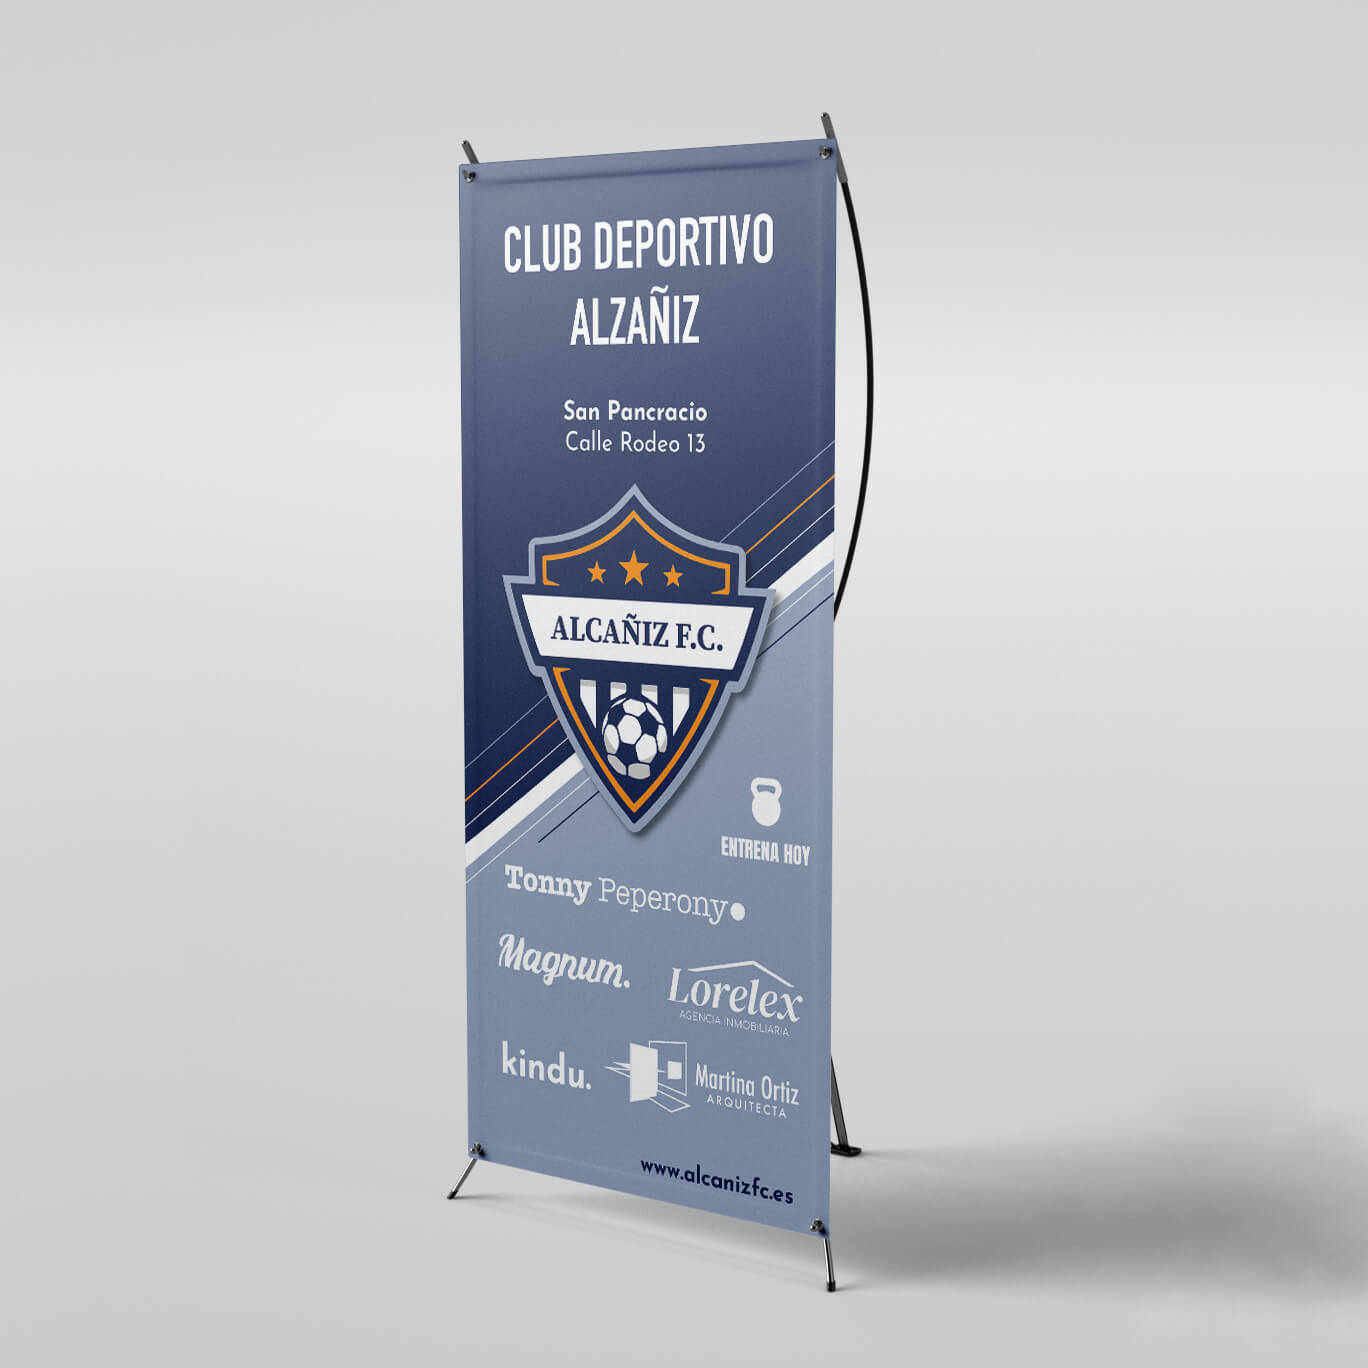 Imagen de un X-banner vertical rotulado con la información del equipo Alcañiz F.C. y sus patrocinadores.